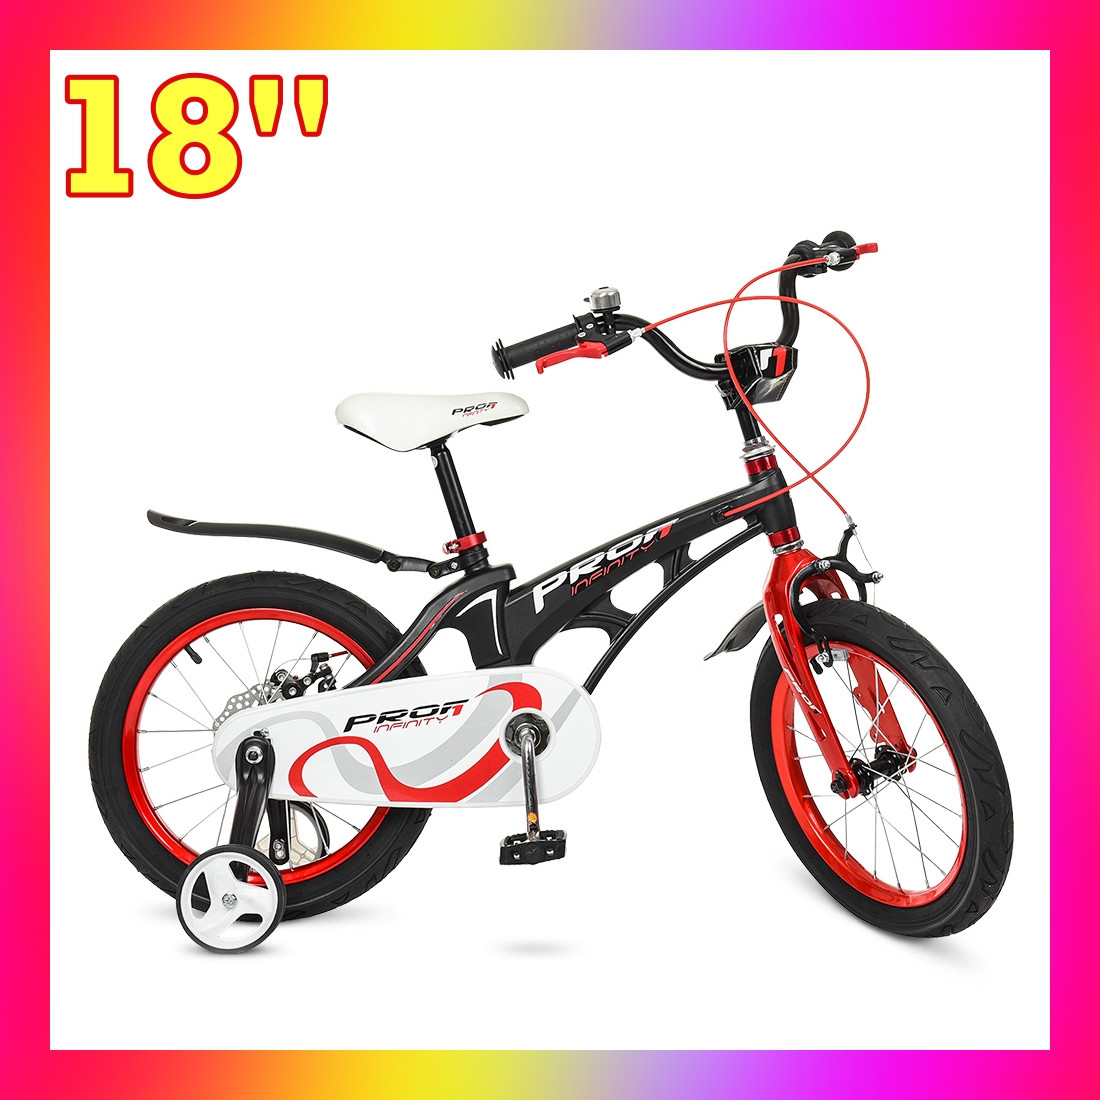 Дитячий двоколісний велосипед Profi Infinity 18 дюймів, LMG18201 чорно-червоний матовий. Для дітей 5-7 років